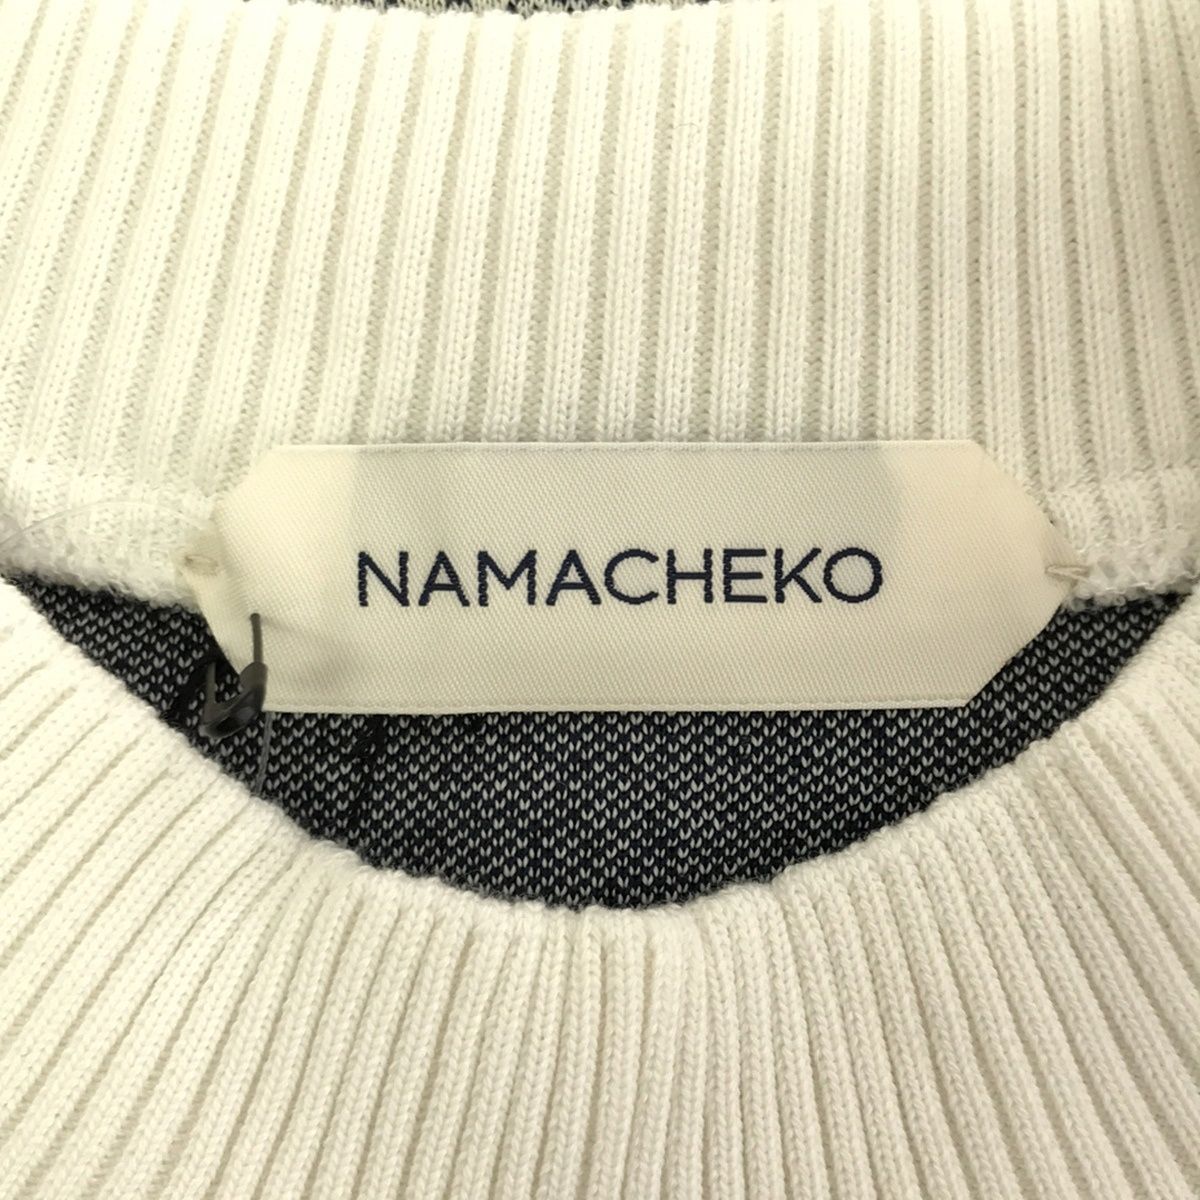 NAMACHEKO ナマチェコ 20SS OONGA SHIRT デザインニットトップス ホワイト ブラック M